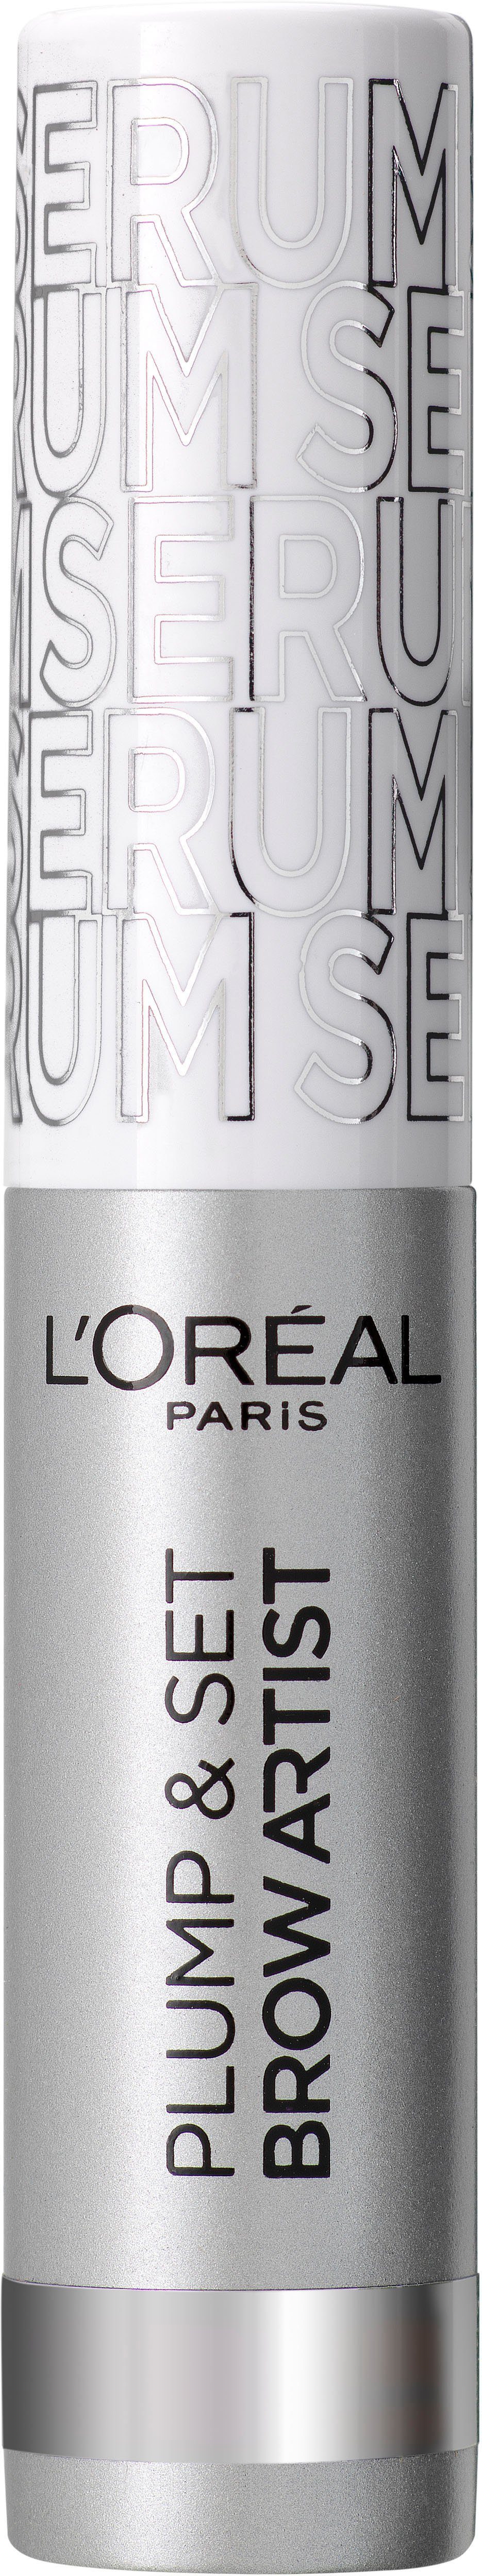 L'ORÉAL PARIS Augenbrauen-Kosmetika Brow Artist Plump & Set, Augen-Make-Up, Serum, pflegend und wischfest | Augenbrauen-Make-Up